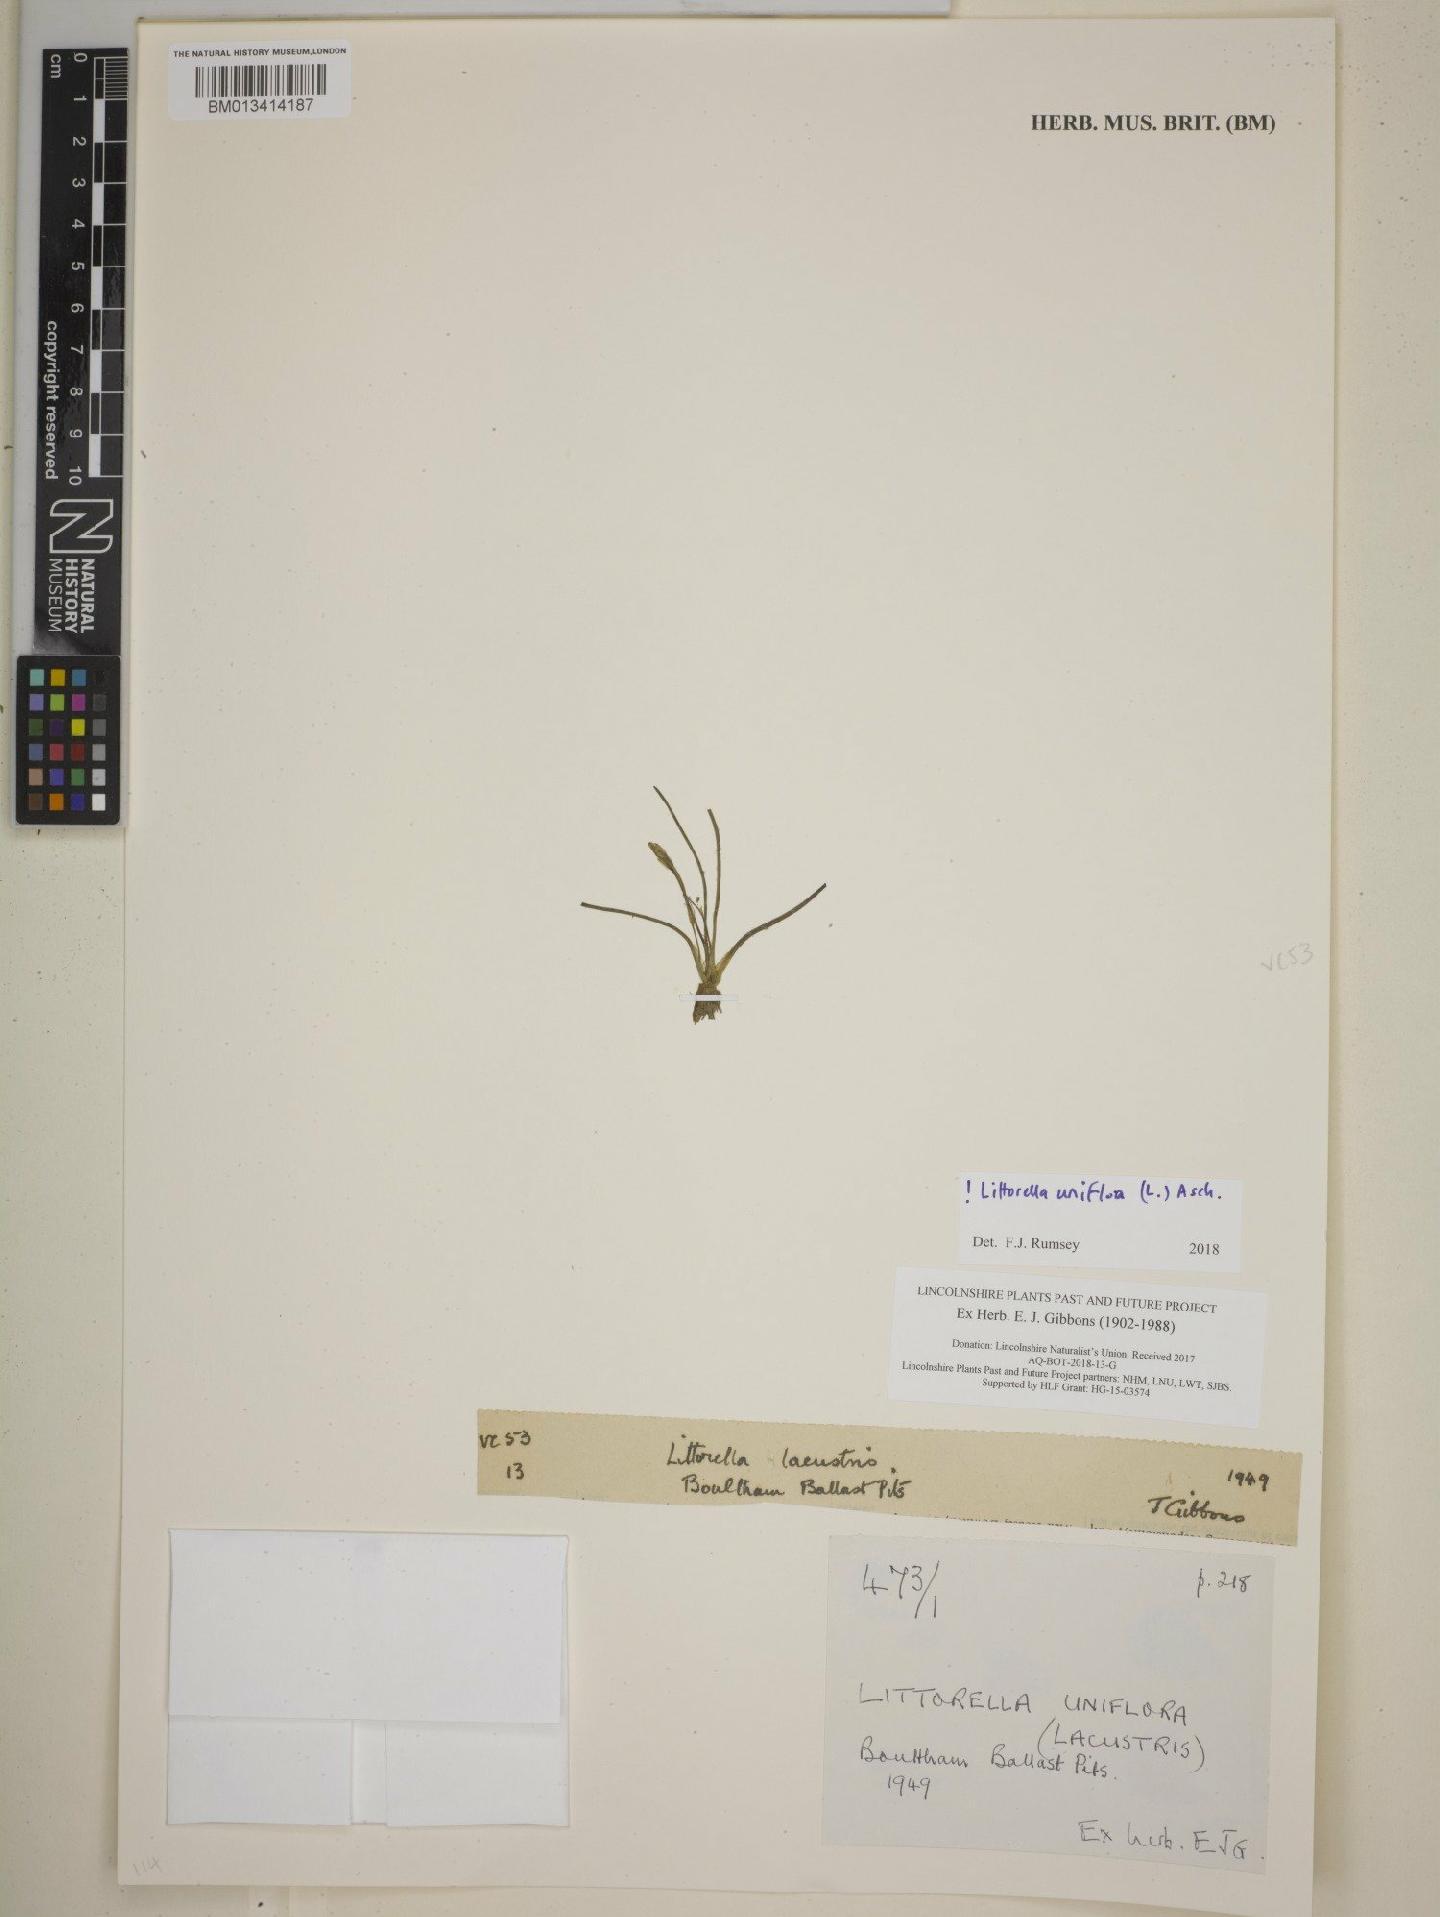 To NHMUK collection (Littorella uniflora (L.) Asch.; NHMUK:ecatalogue:8665386)